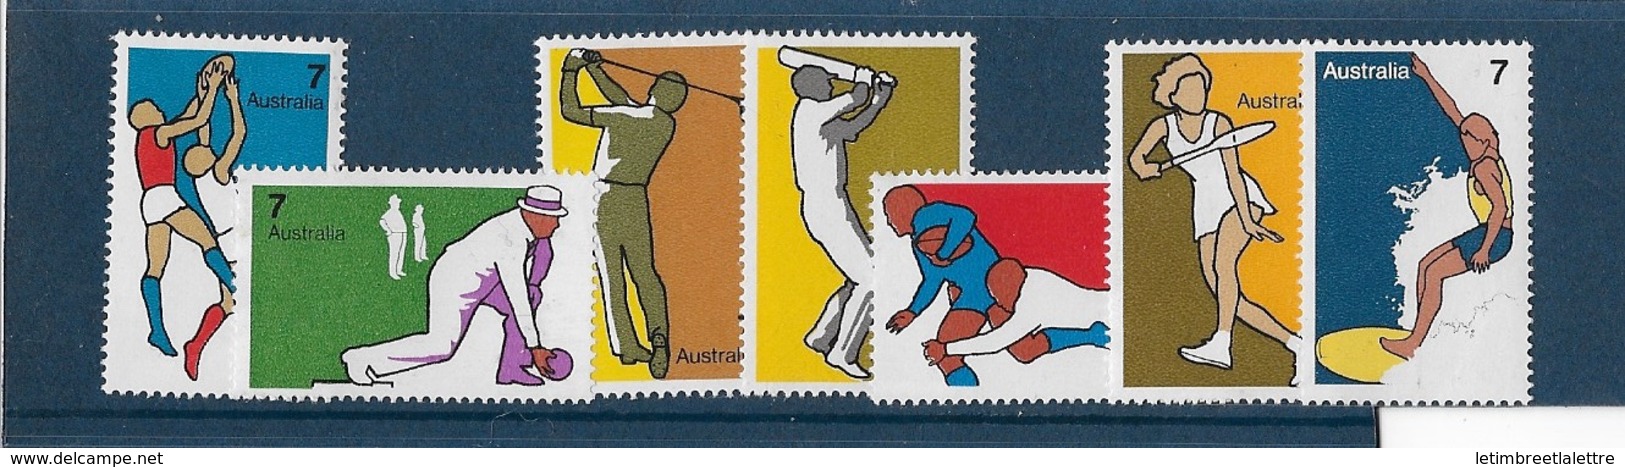 AUSTRALIE N° 535 à 541** - Mint Stamps